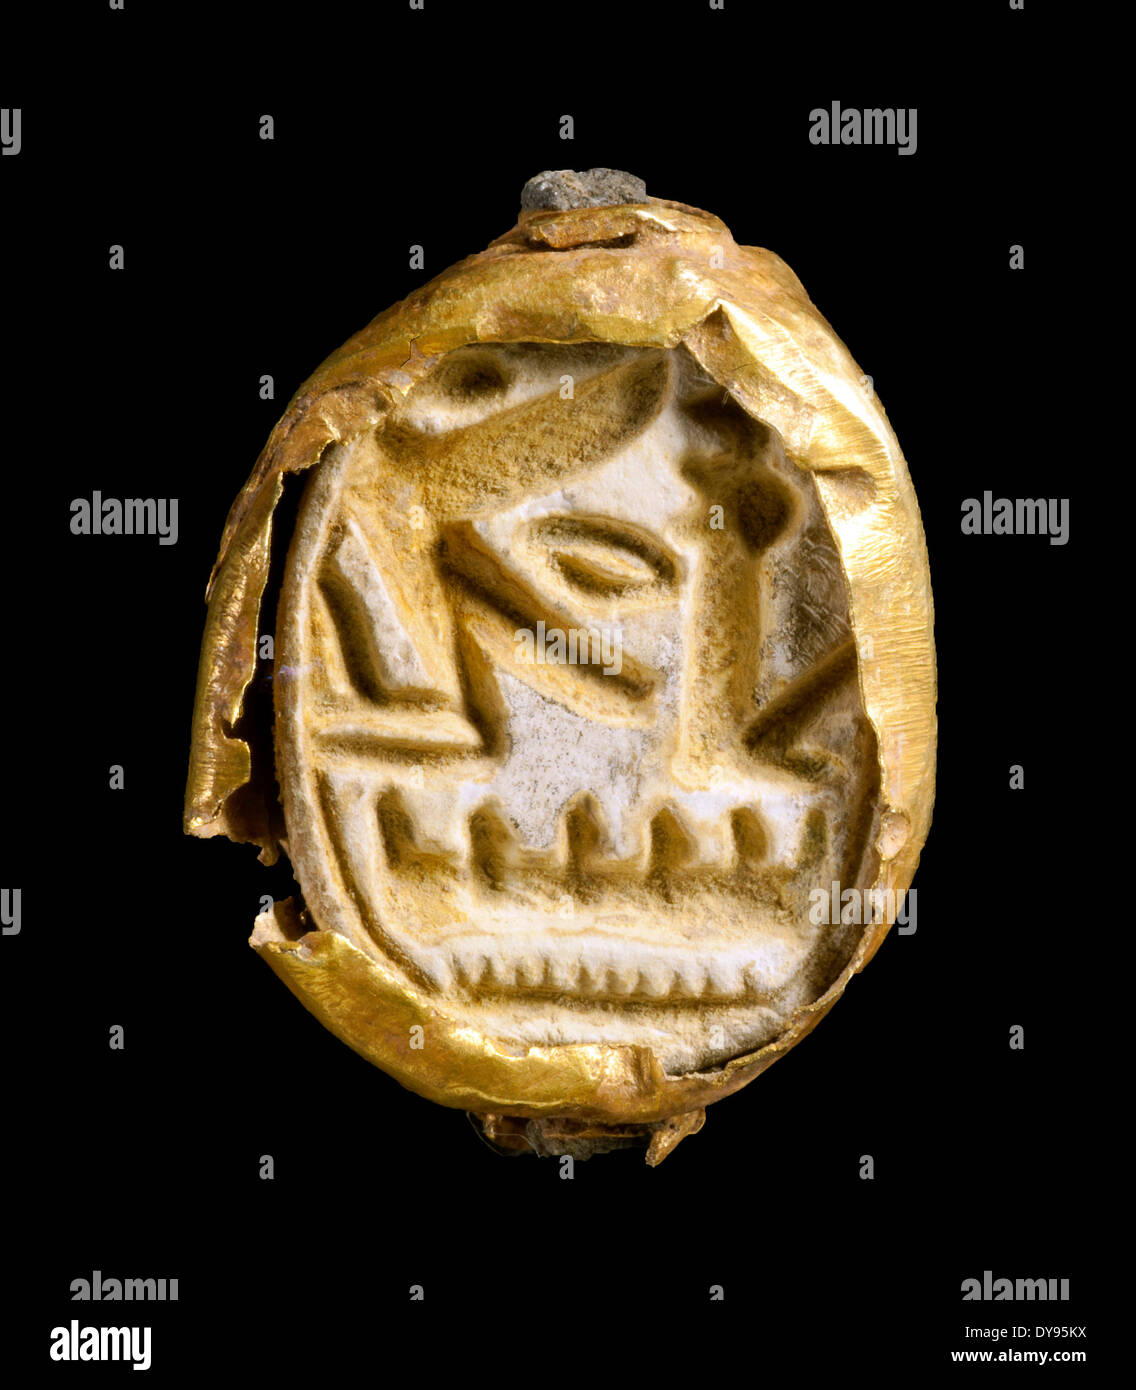 (140410)--JERUSALEM, 10. April 2014 (Xinhua)--Datei Foto aufgenommen am 3. April 2014, und veröffentlicht von der israelischen Altertumsbehörde zeigt einen Skarabäus-Dichtring eingehüllt in Gold, mit dem Namen des Pharao Seti ich der altes Ägypten im 13. Jahrhundert v. Chr. finden Sie unter Tel Shadud, einen archäologischen Hügel in die Jezreel Senke, Nordisrael regierte. Eine 3.200-j hrige Sarg mit ägyptischen Kostbarkeiten, die Archäologen glauben wurde gehörte zu einem hochrangigen Canaanite offizielle im Norden Israels, der Israel Antiquities Authority kündigte am 9. April 2014 entdeckt. Der Lehm-Sarkophag wurde gefunden Stockfoto